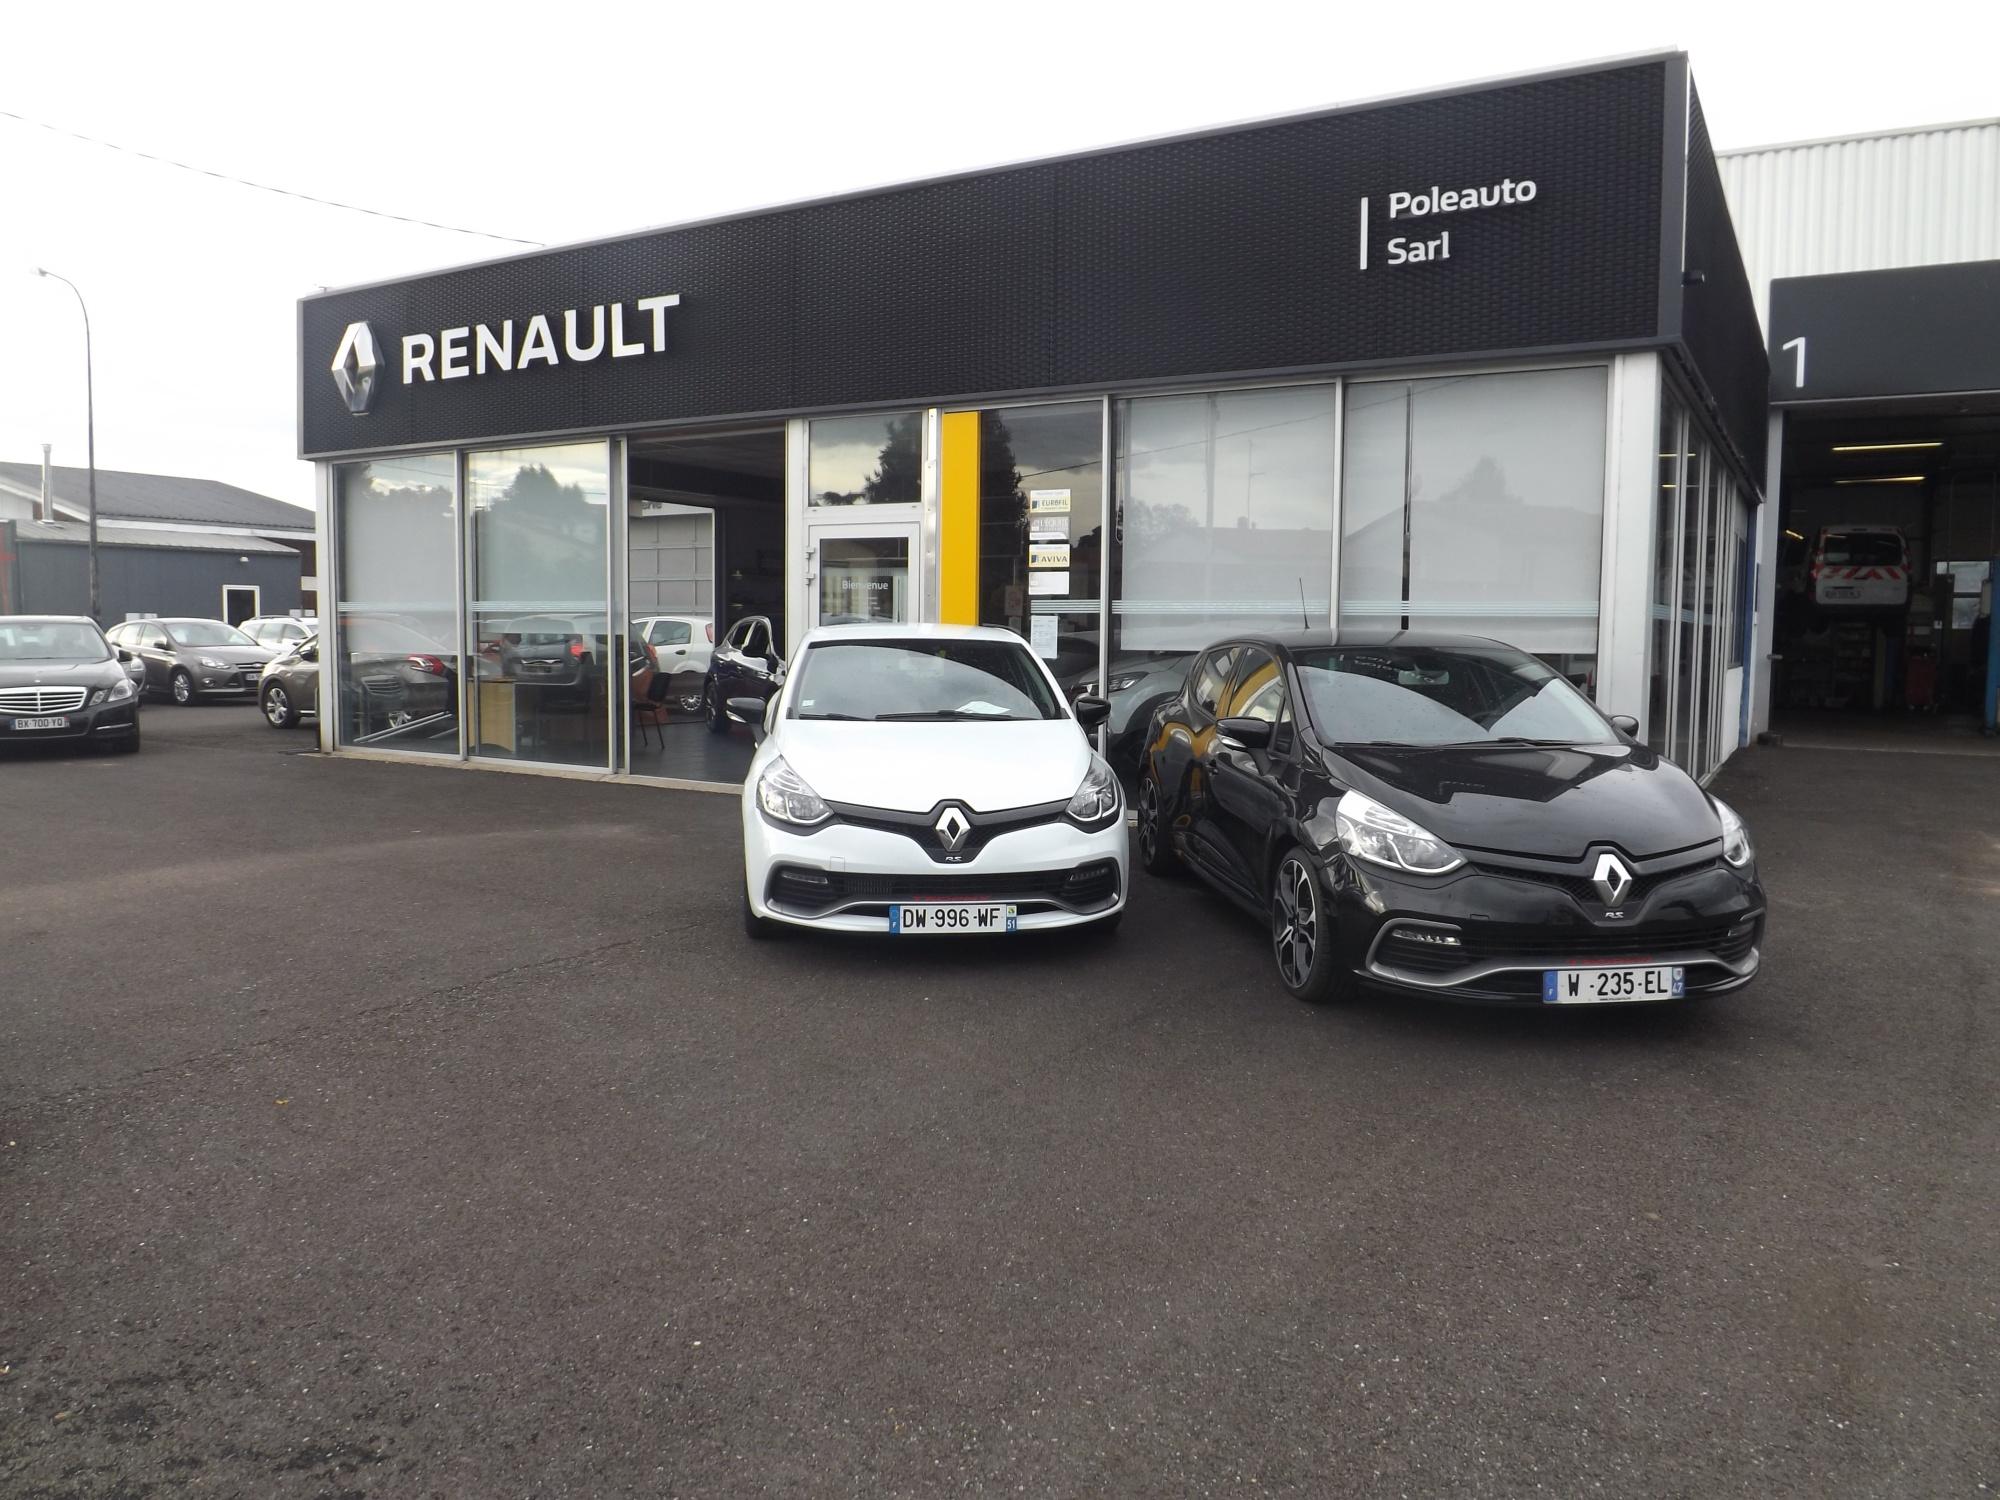 Renault - Pôle Auto Le Passage